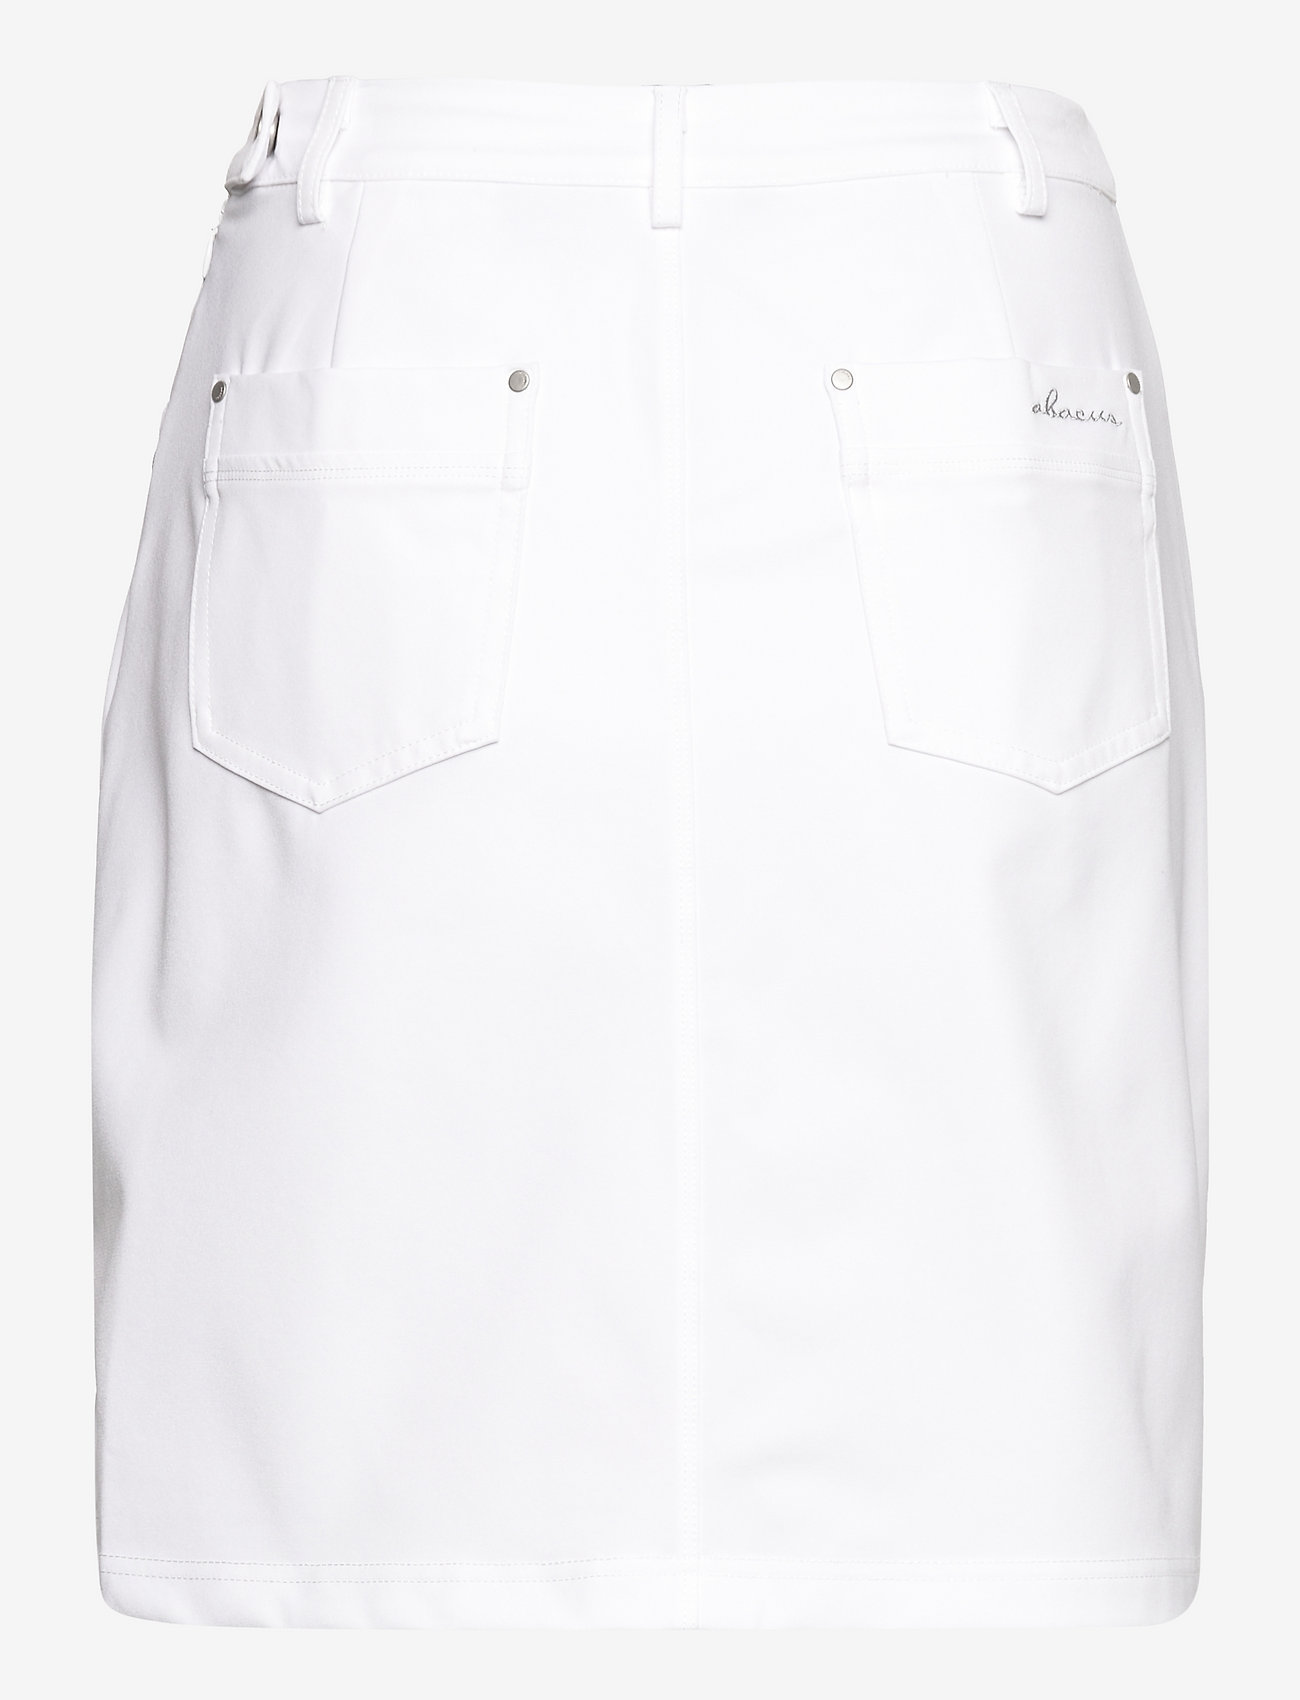 Abacus - Lds Elite skort 50cm - skirts - white - 1